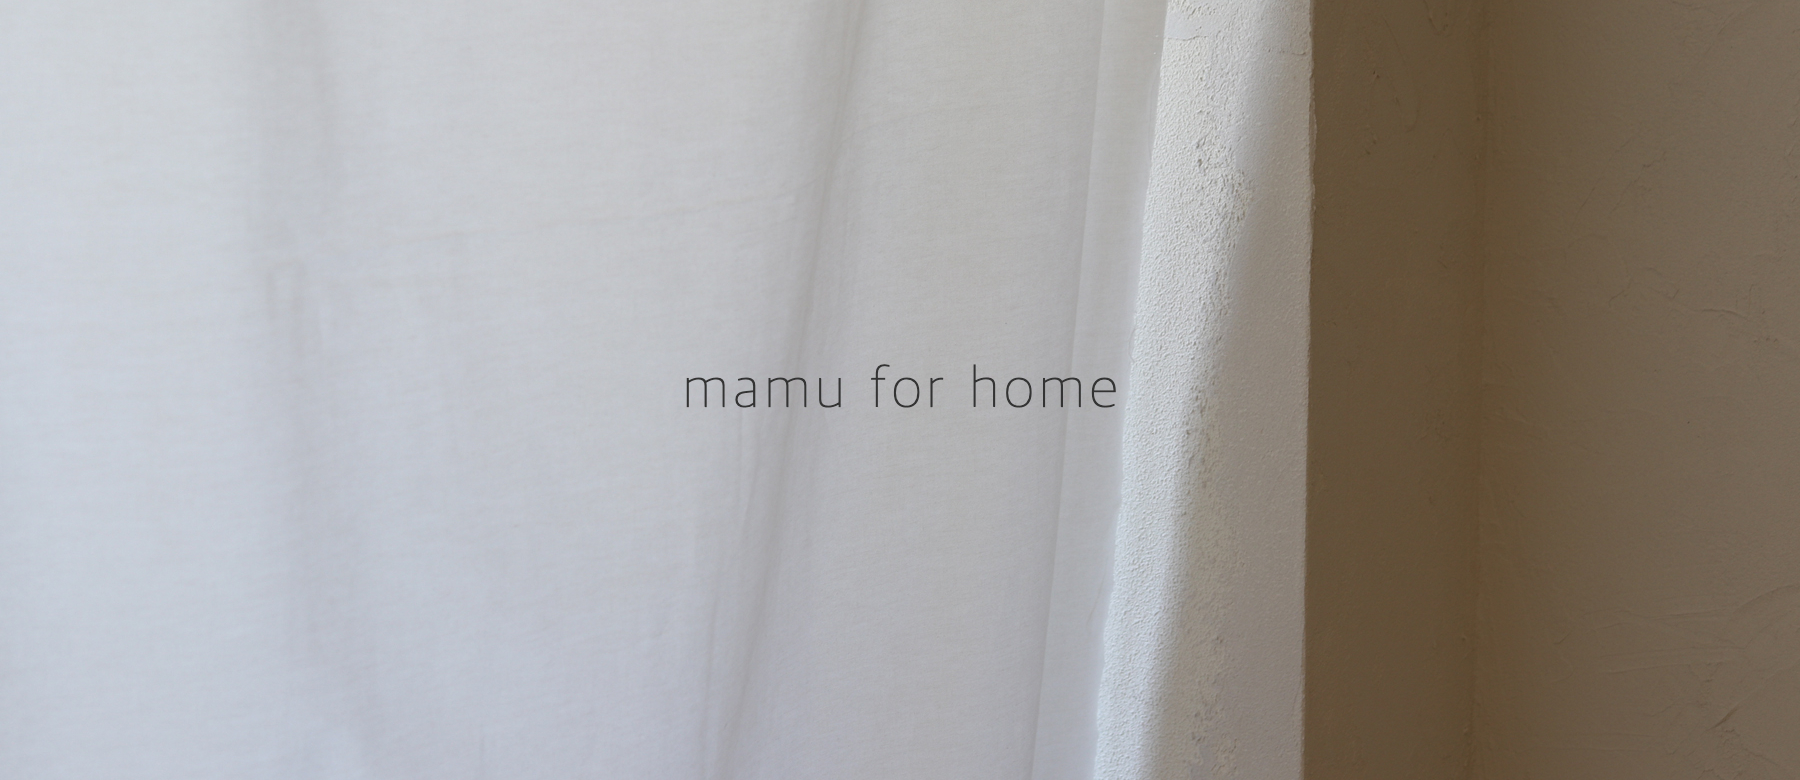 mamu-for-home